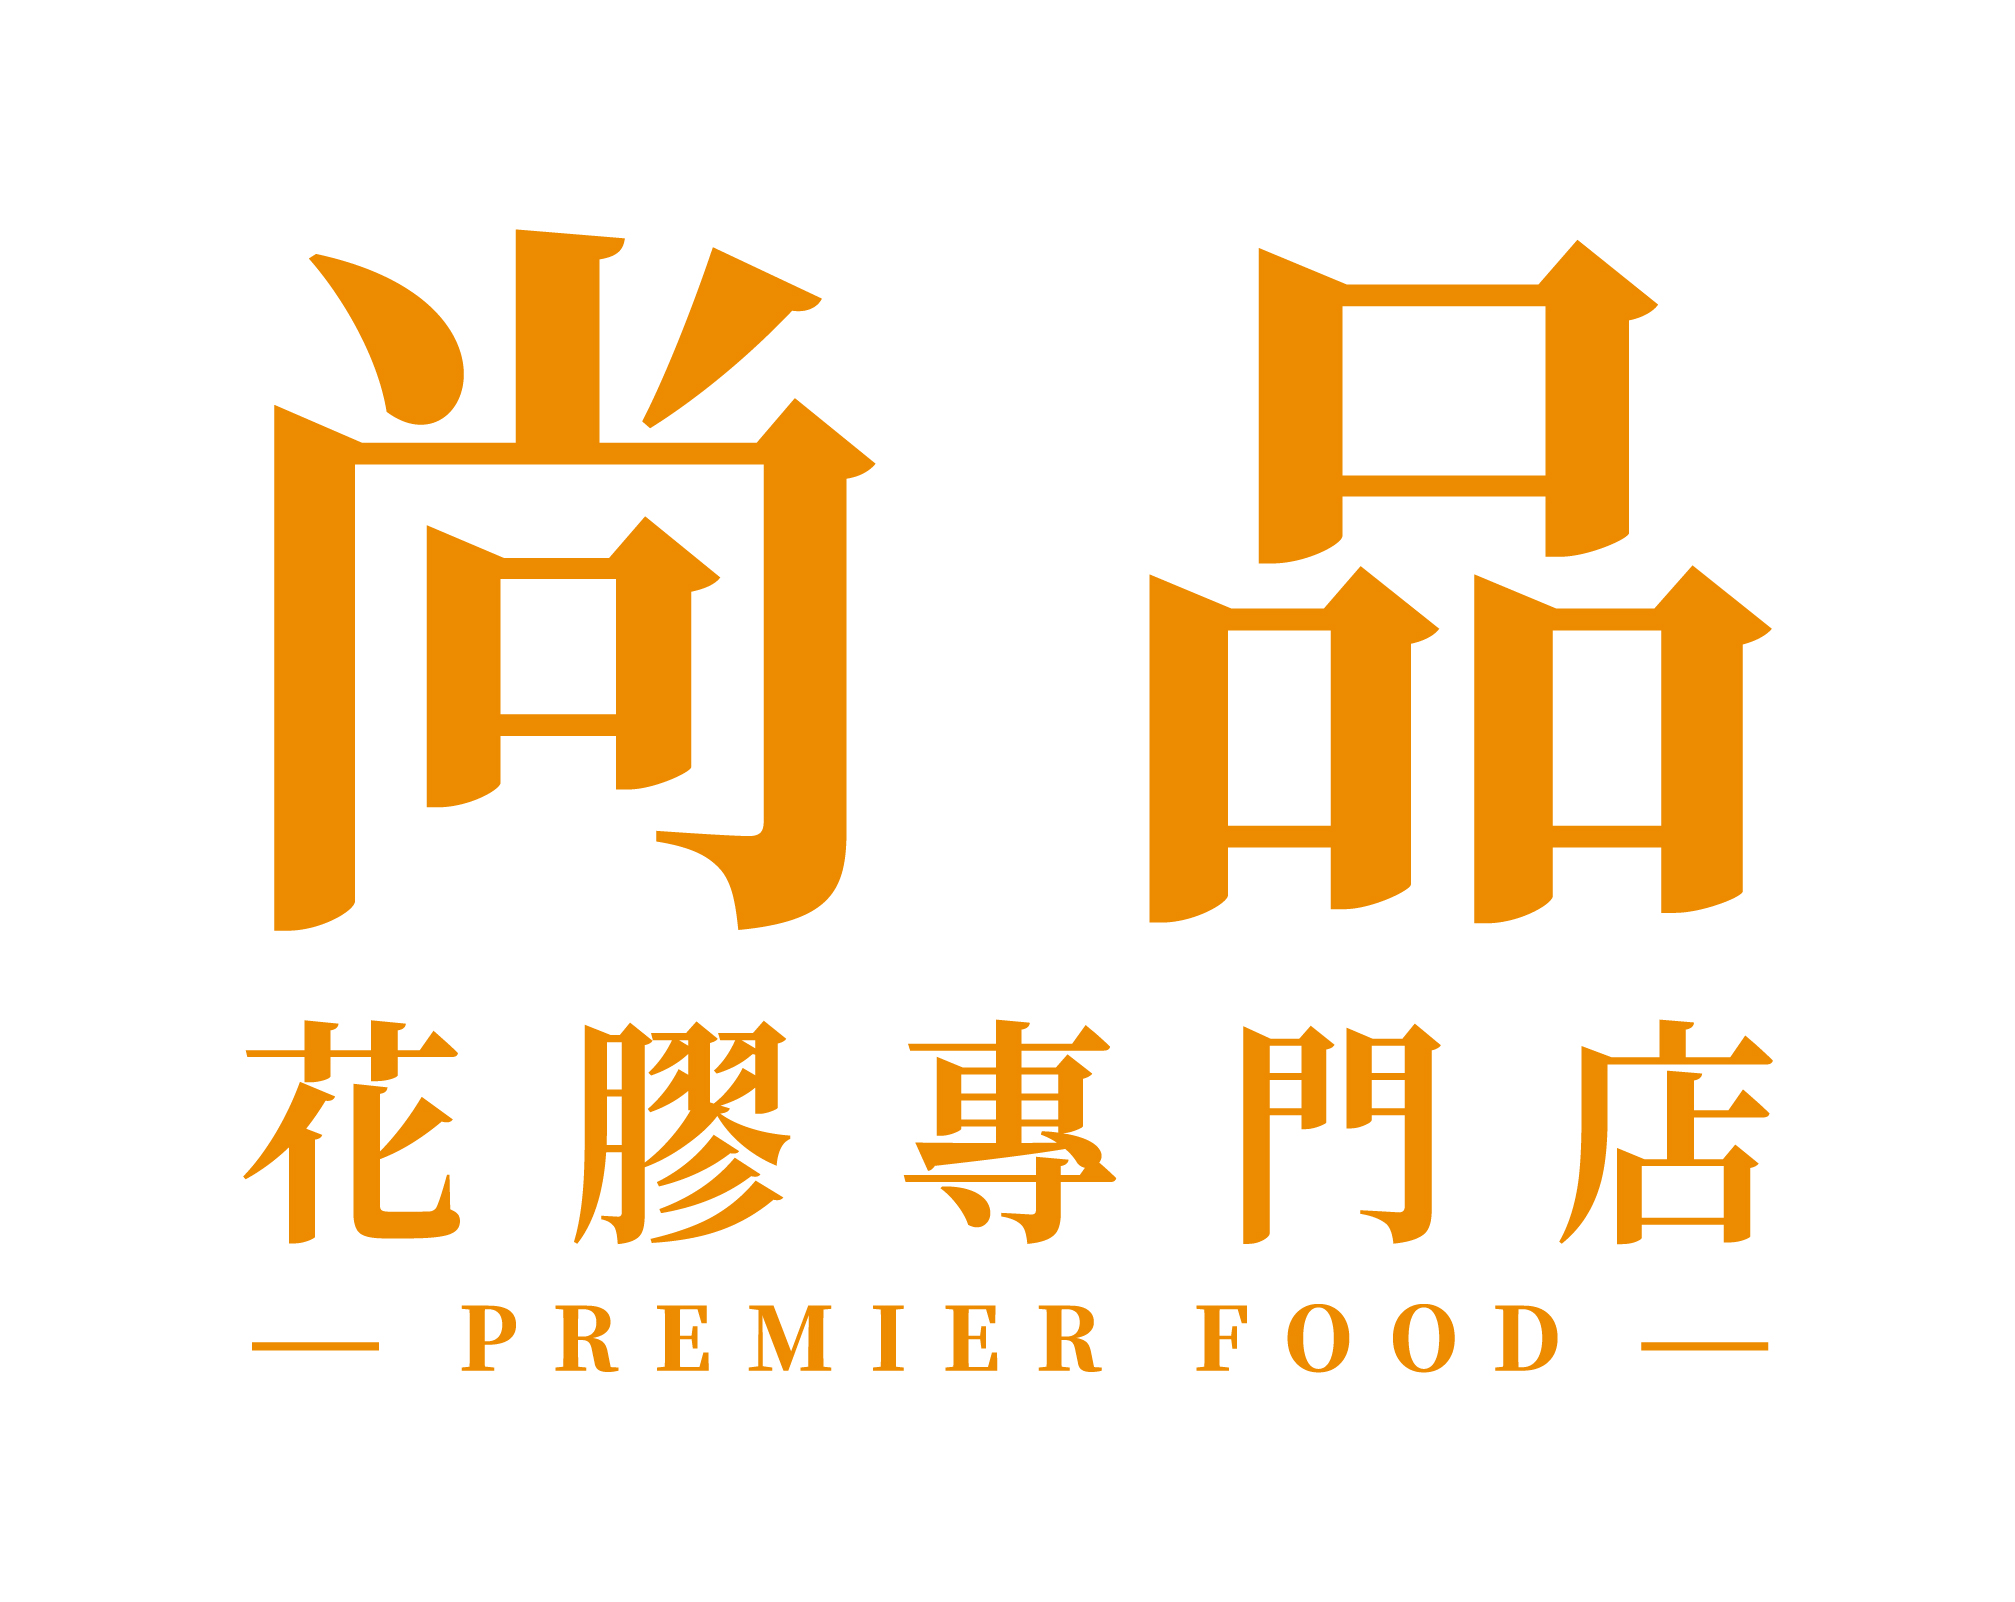 Premier Food